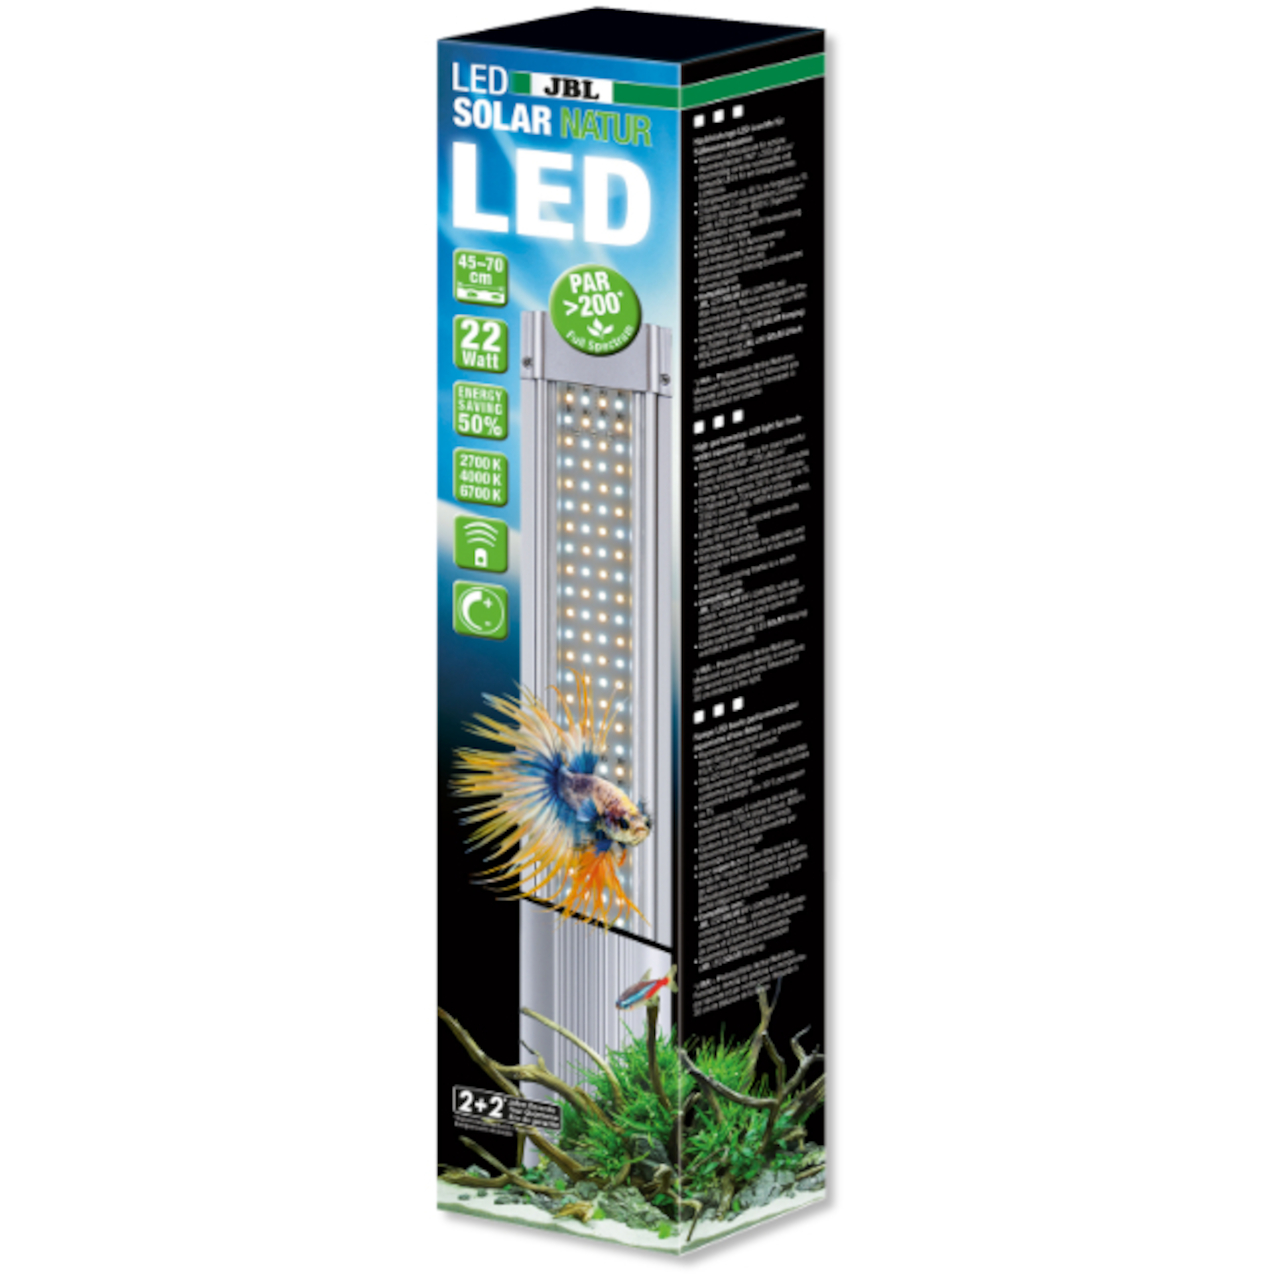 JBL LED Solar Natur 59 Watt